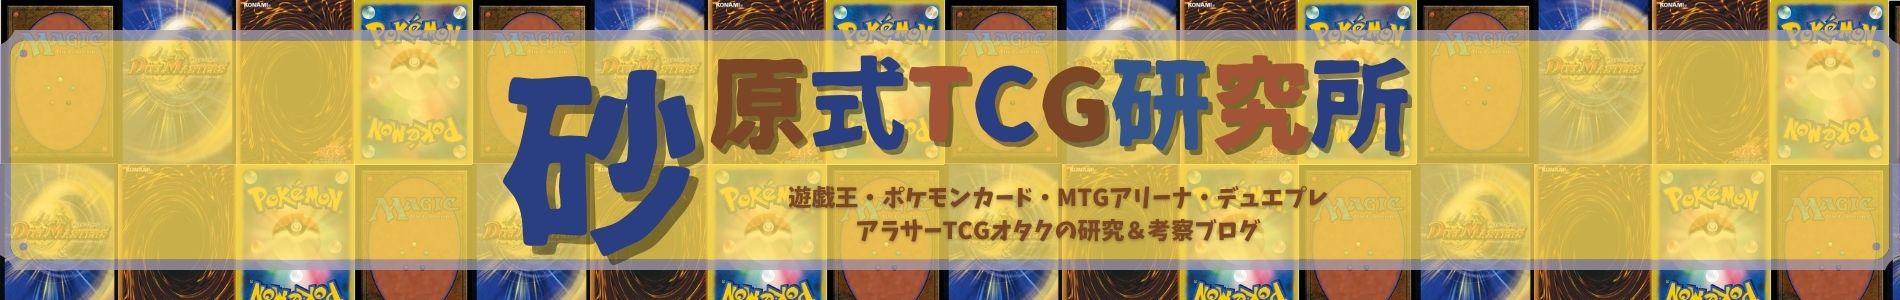 ポケモンカードの転売問題について考える 砂原式tcg研究所 遊戯王ブログ